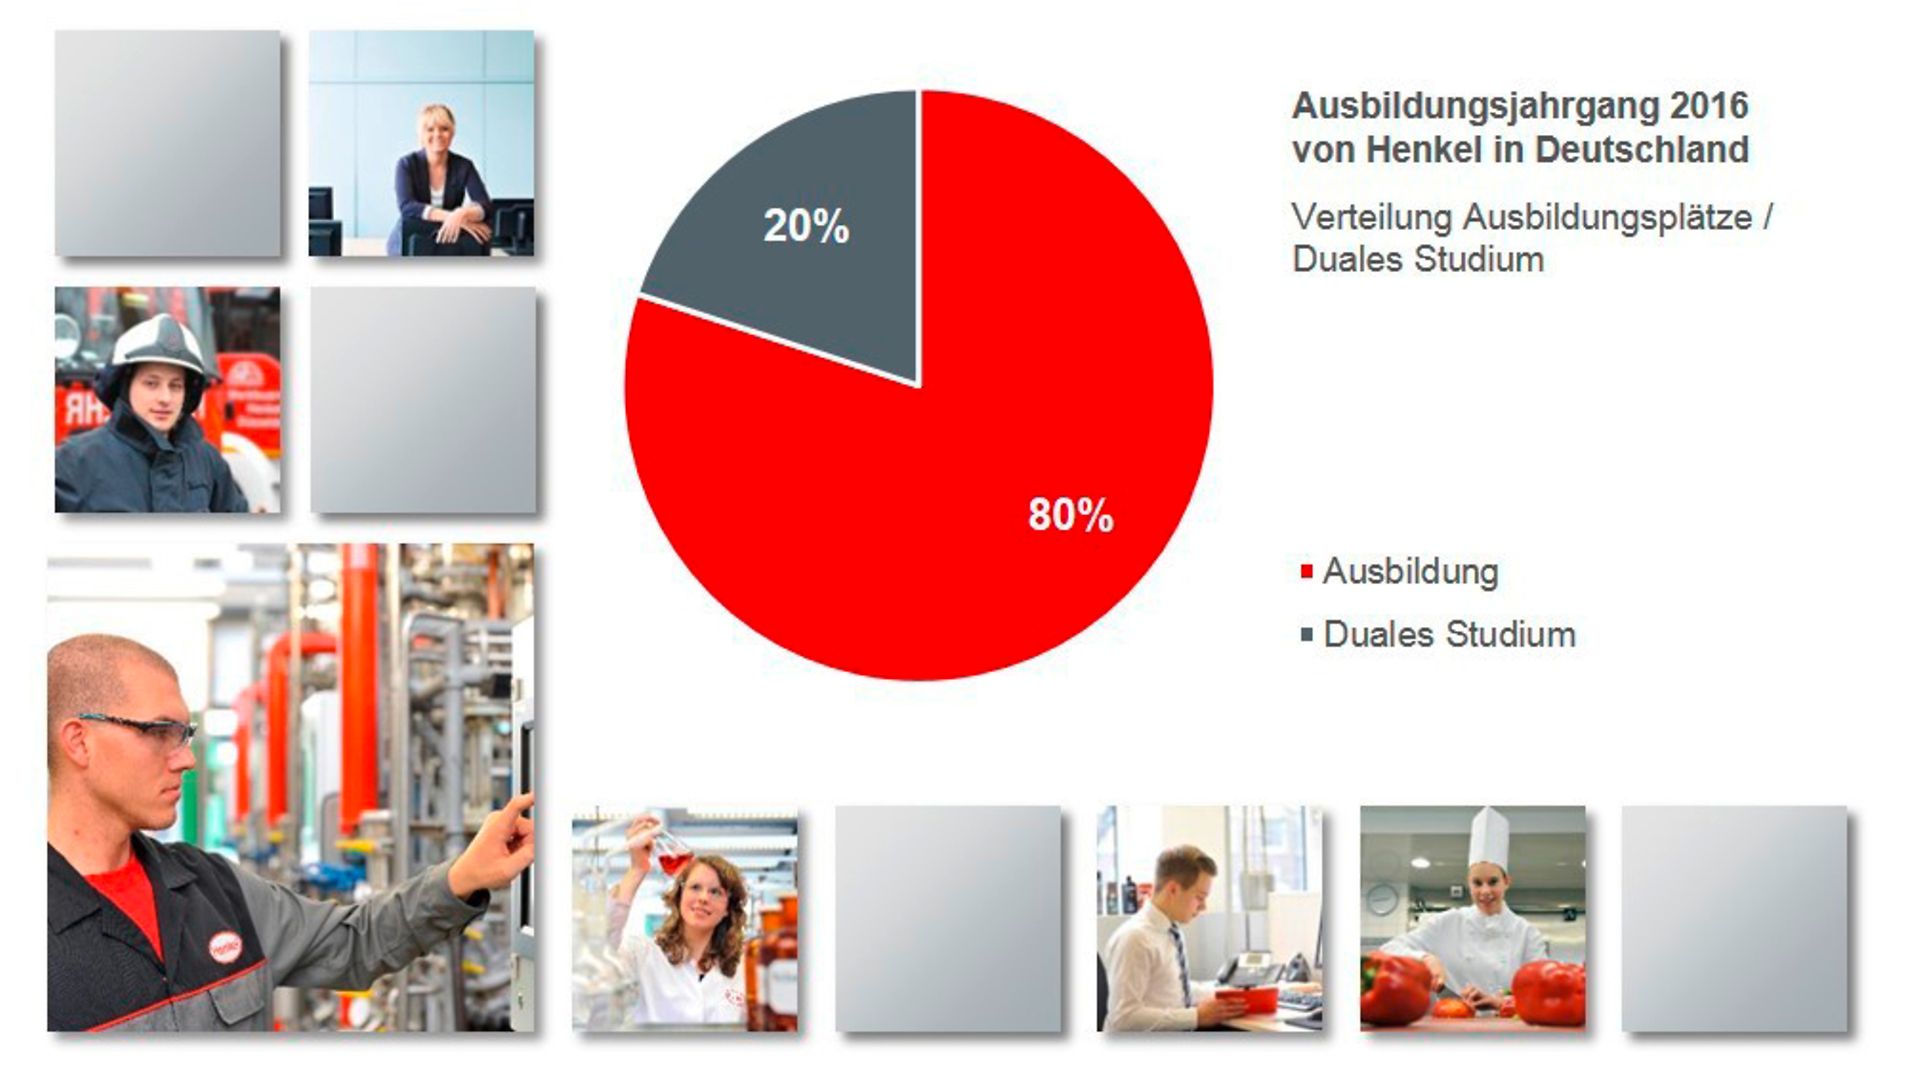 Ausbildungsplätze / Duales Studium im Ausbildungsjahrgang 2016 von Henkel in Deutschland